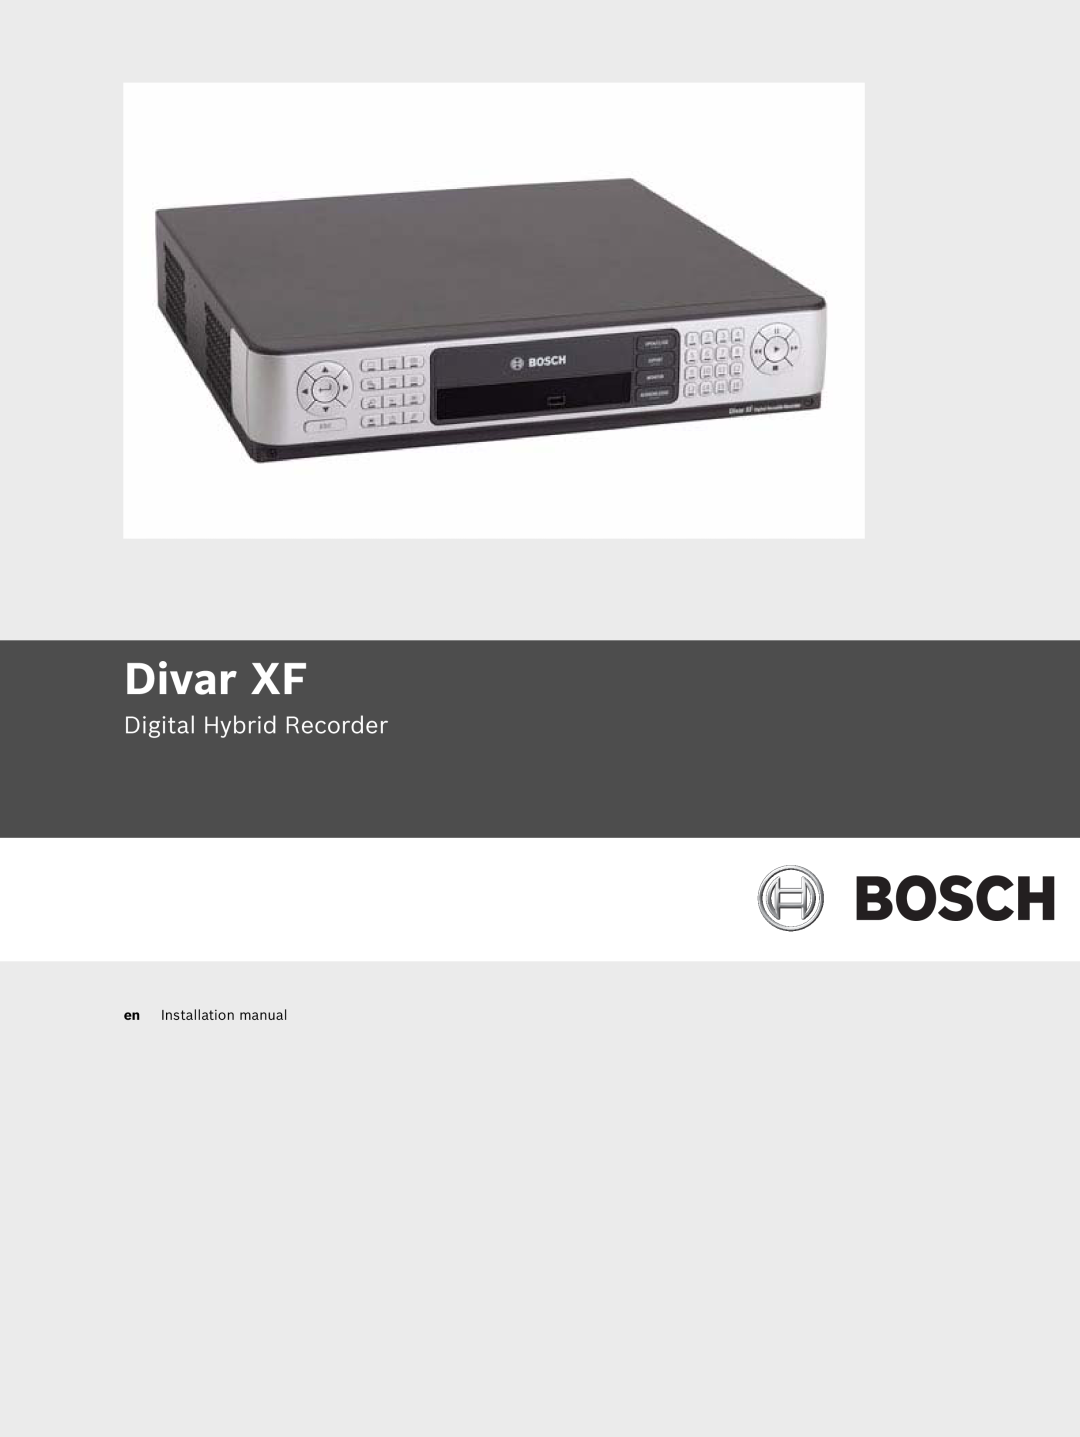 Bosch Appliances installation manual Divar XF, Digital Hybrid Recorder, en Installation manual 